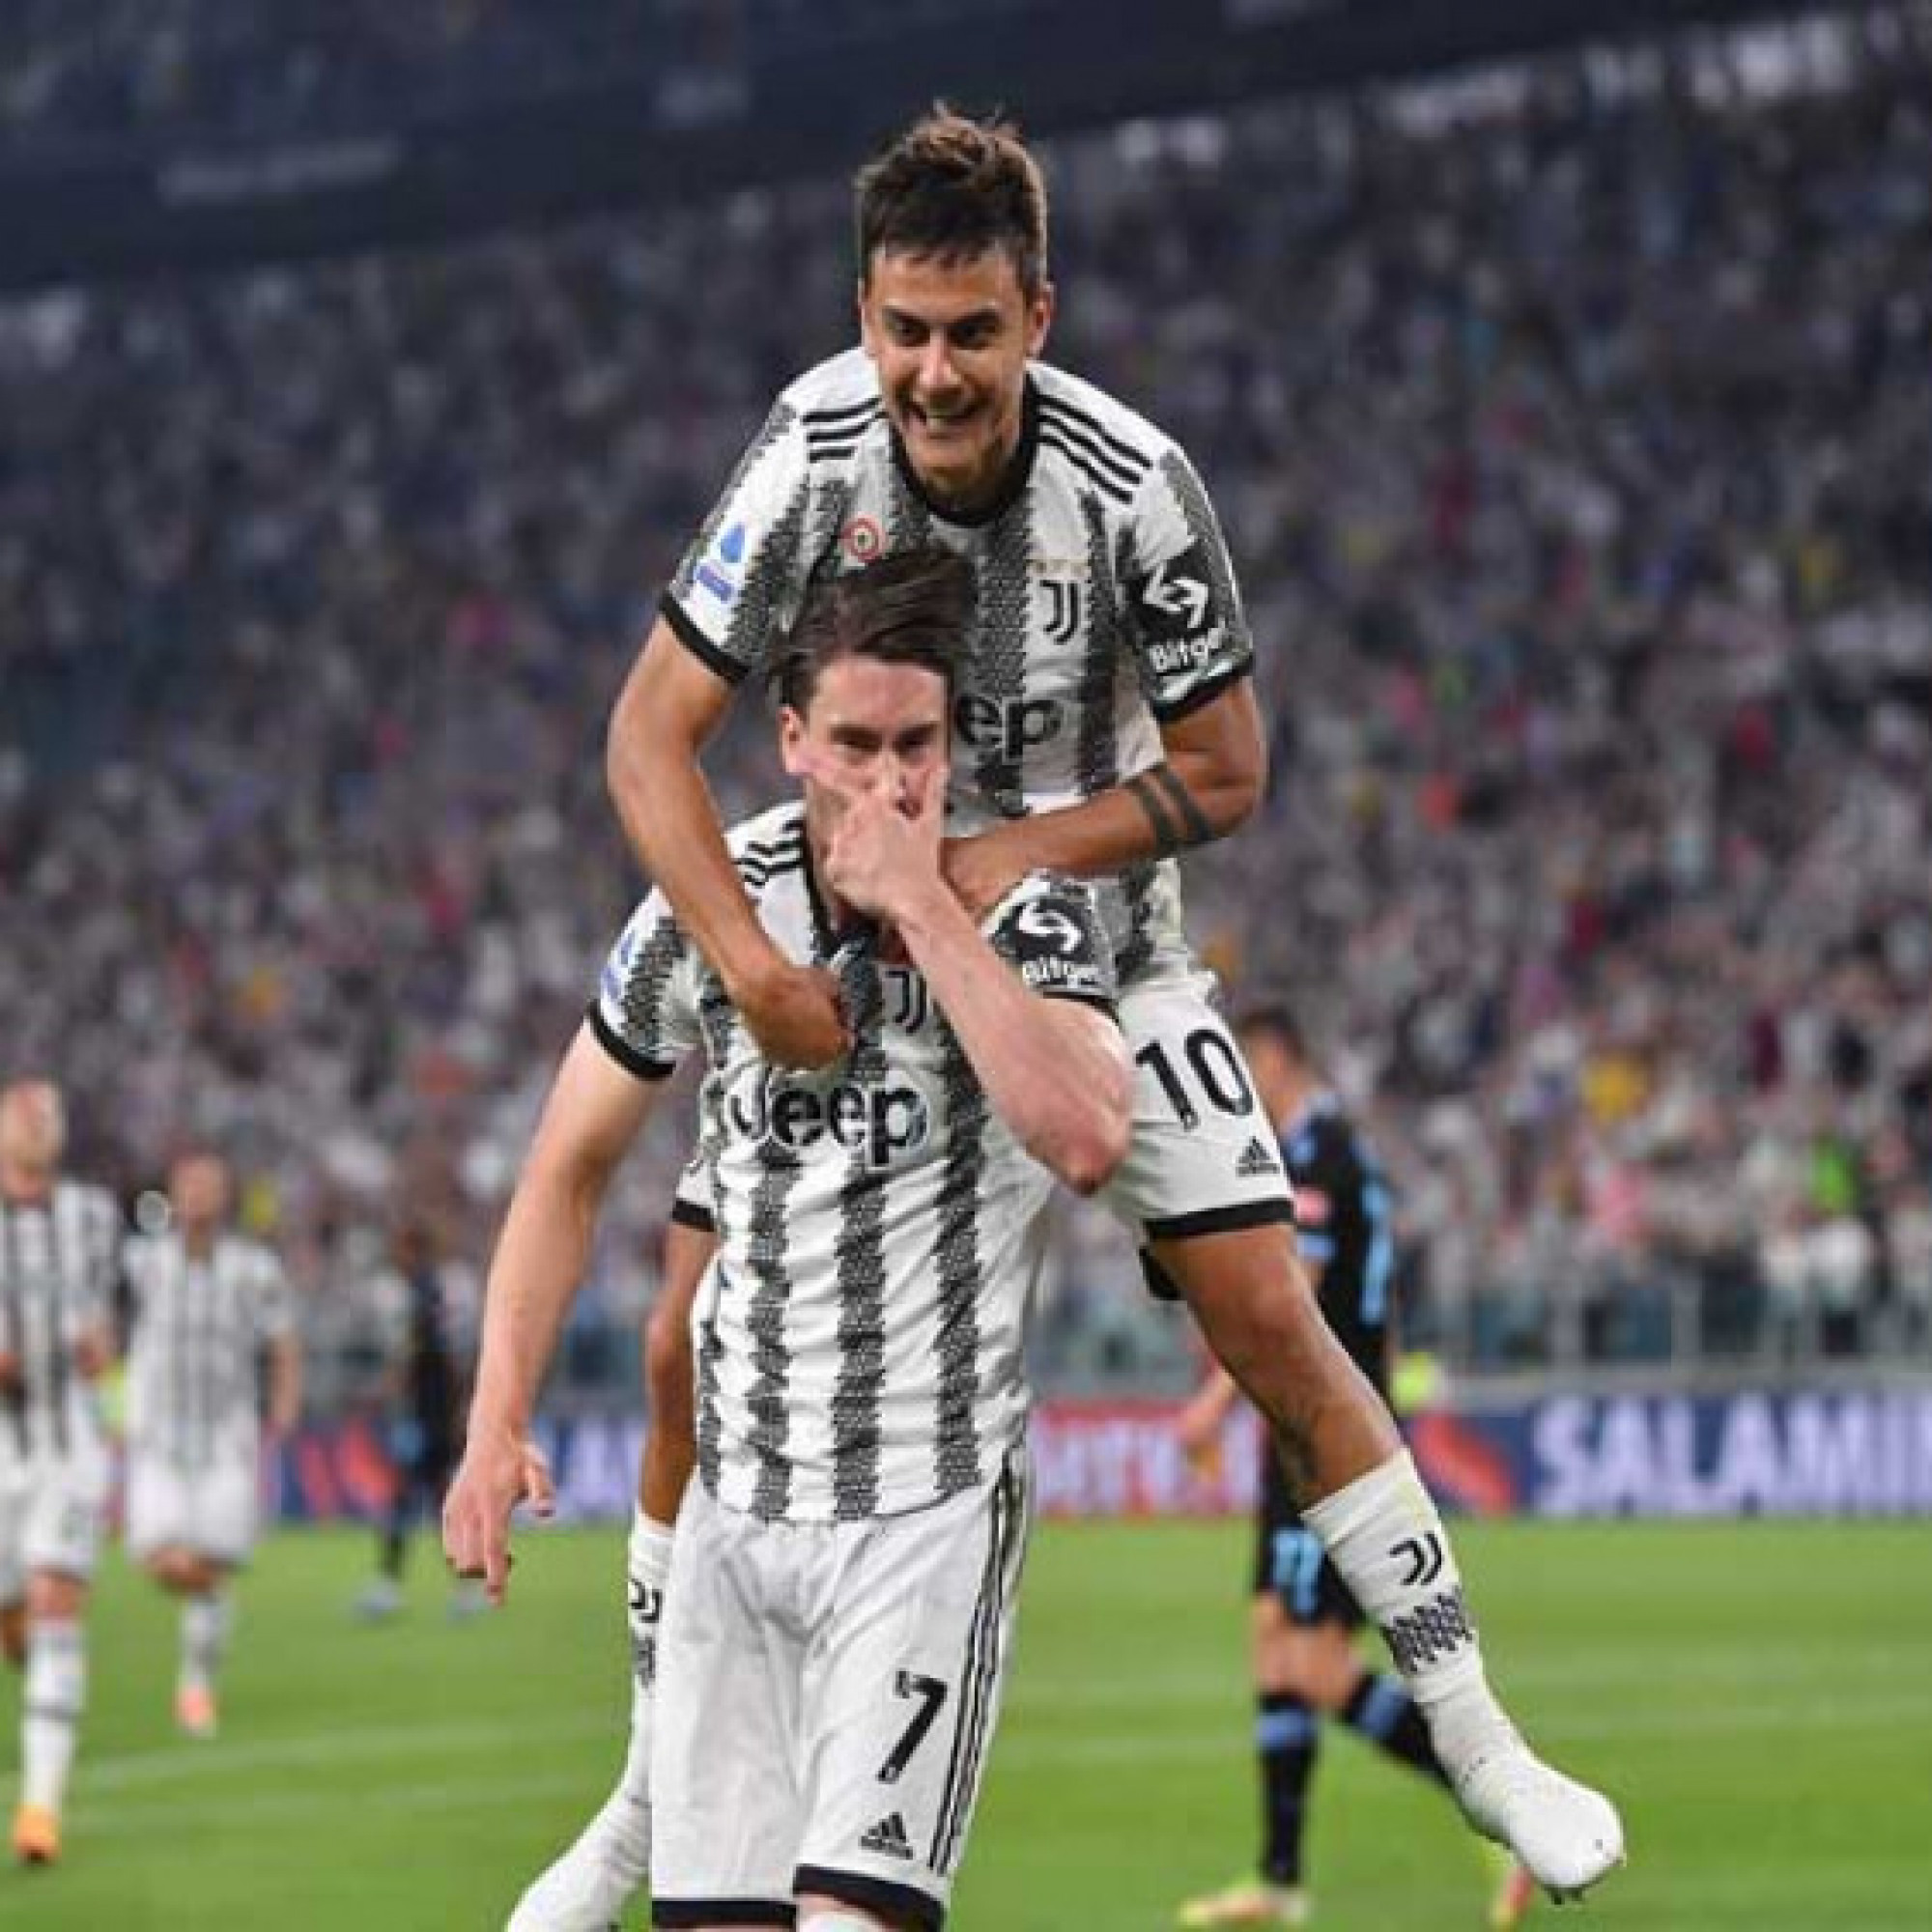 Kết quả bóng đá Juventus - Lazio: "Bom tấn" khai thông, ngỡ ngàng phút 90+6 (Vòng 37 Serie A)